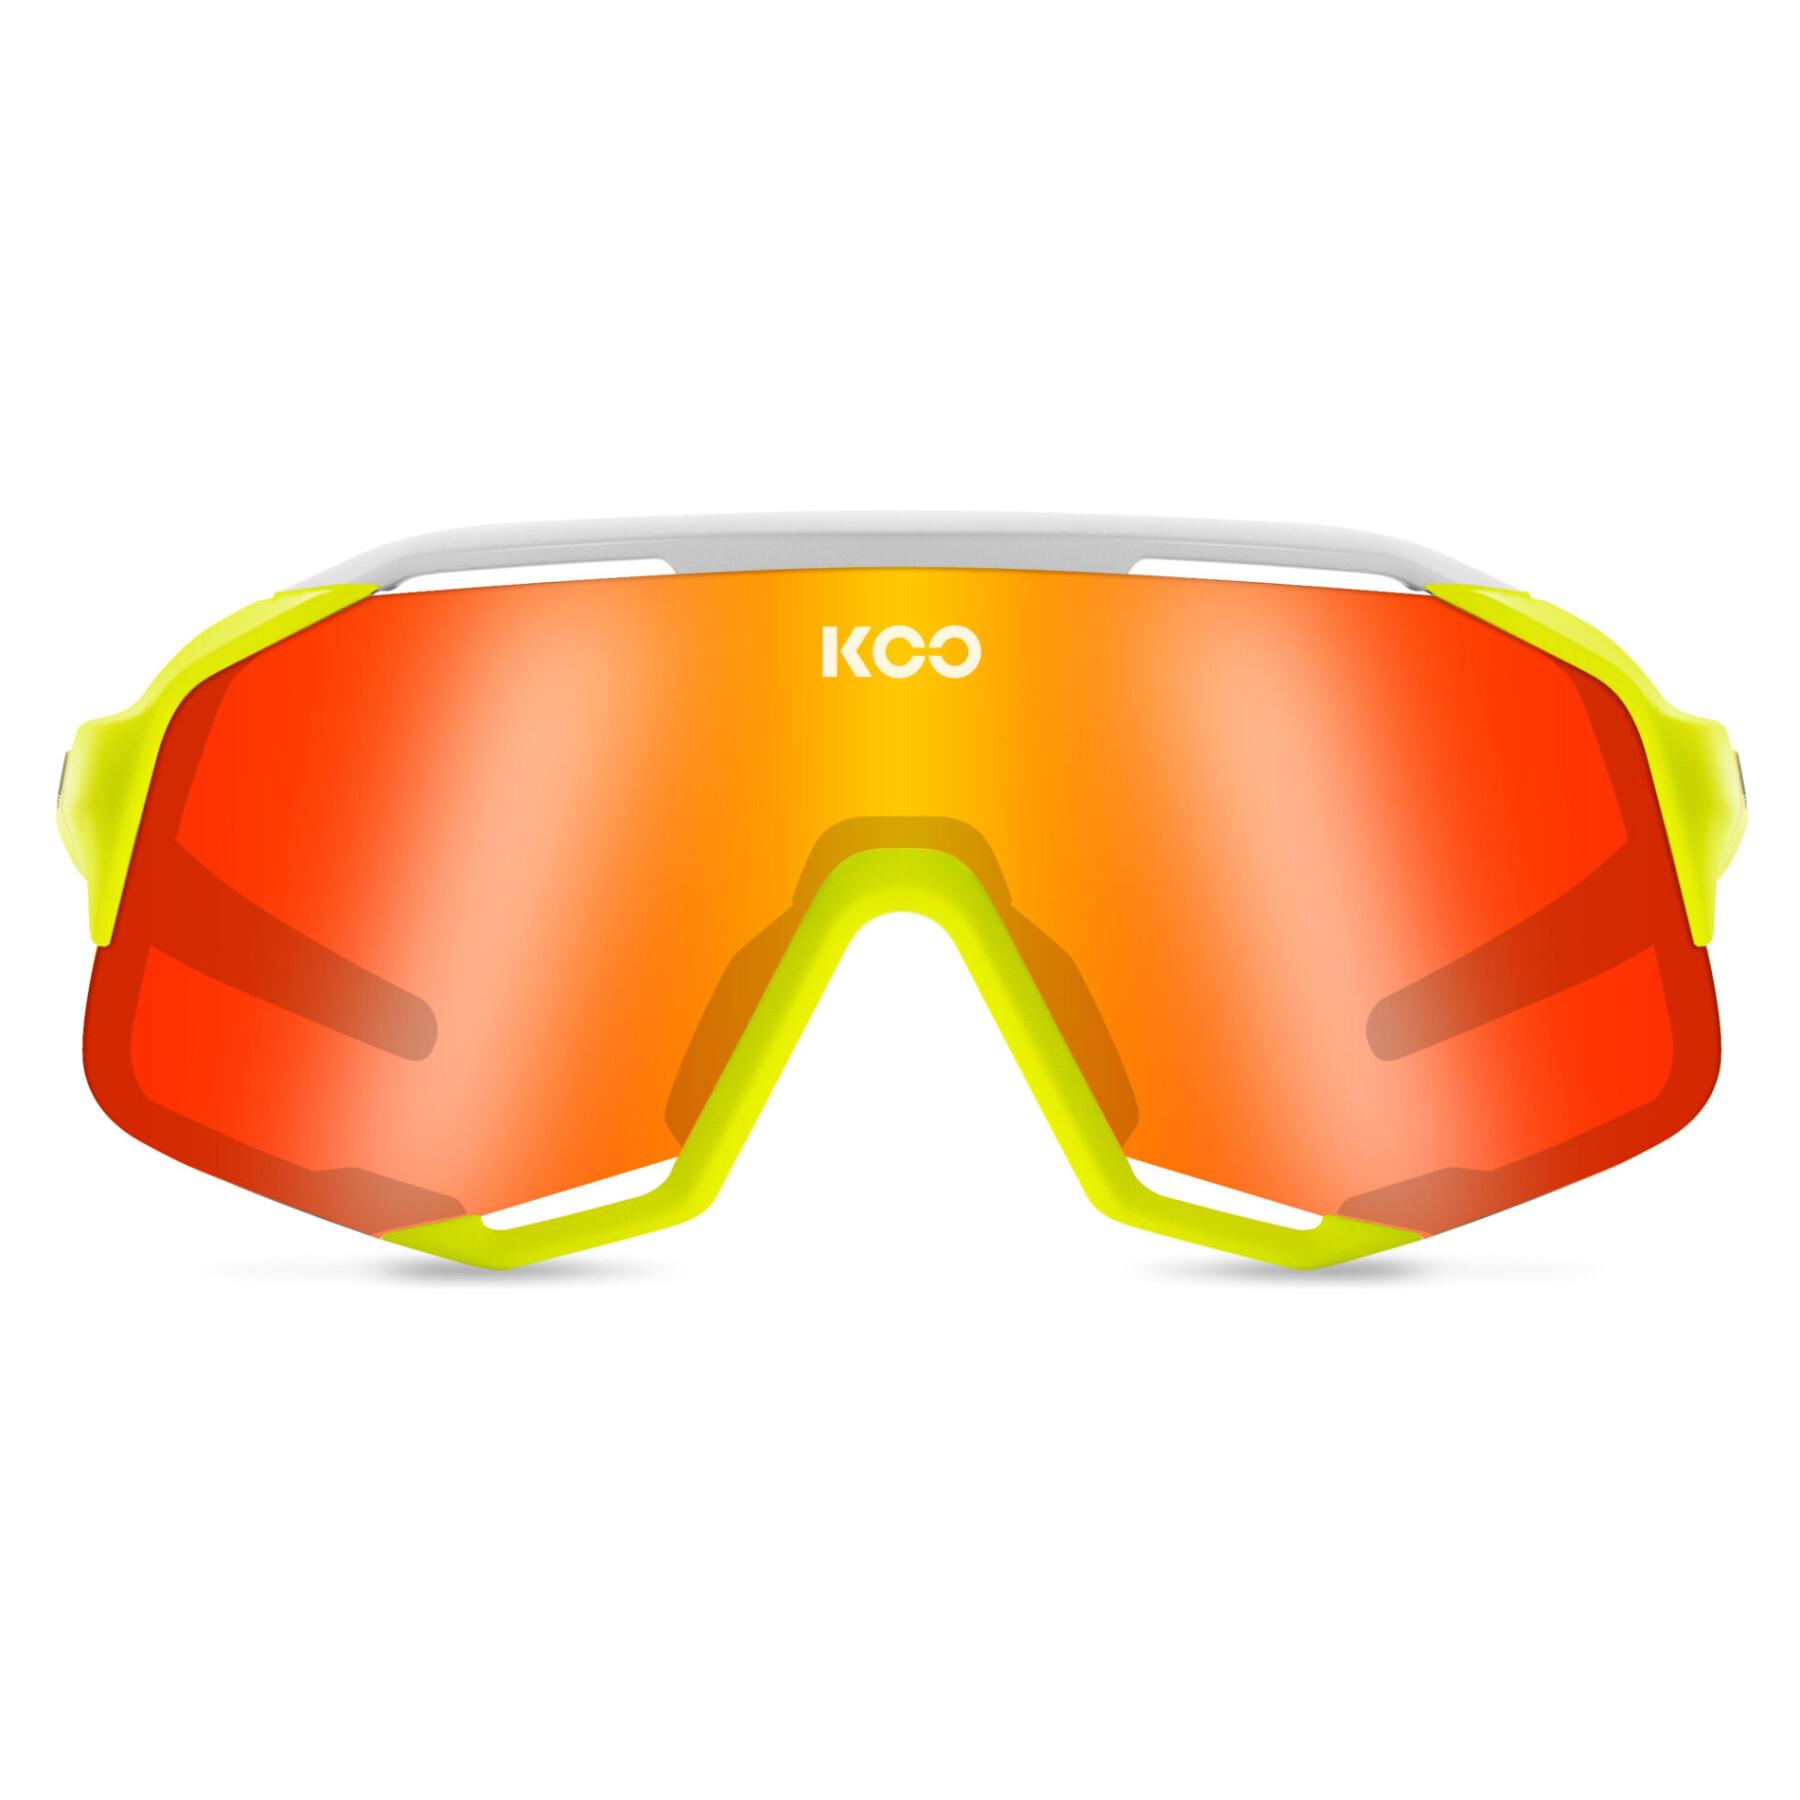 Gafas de sol Koo demos energy capsule collection